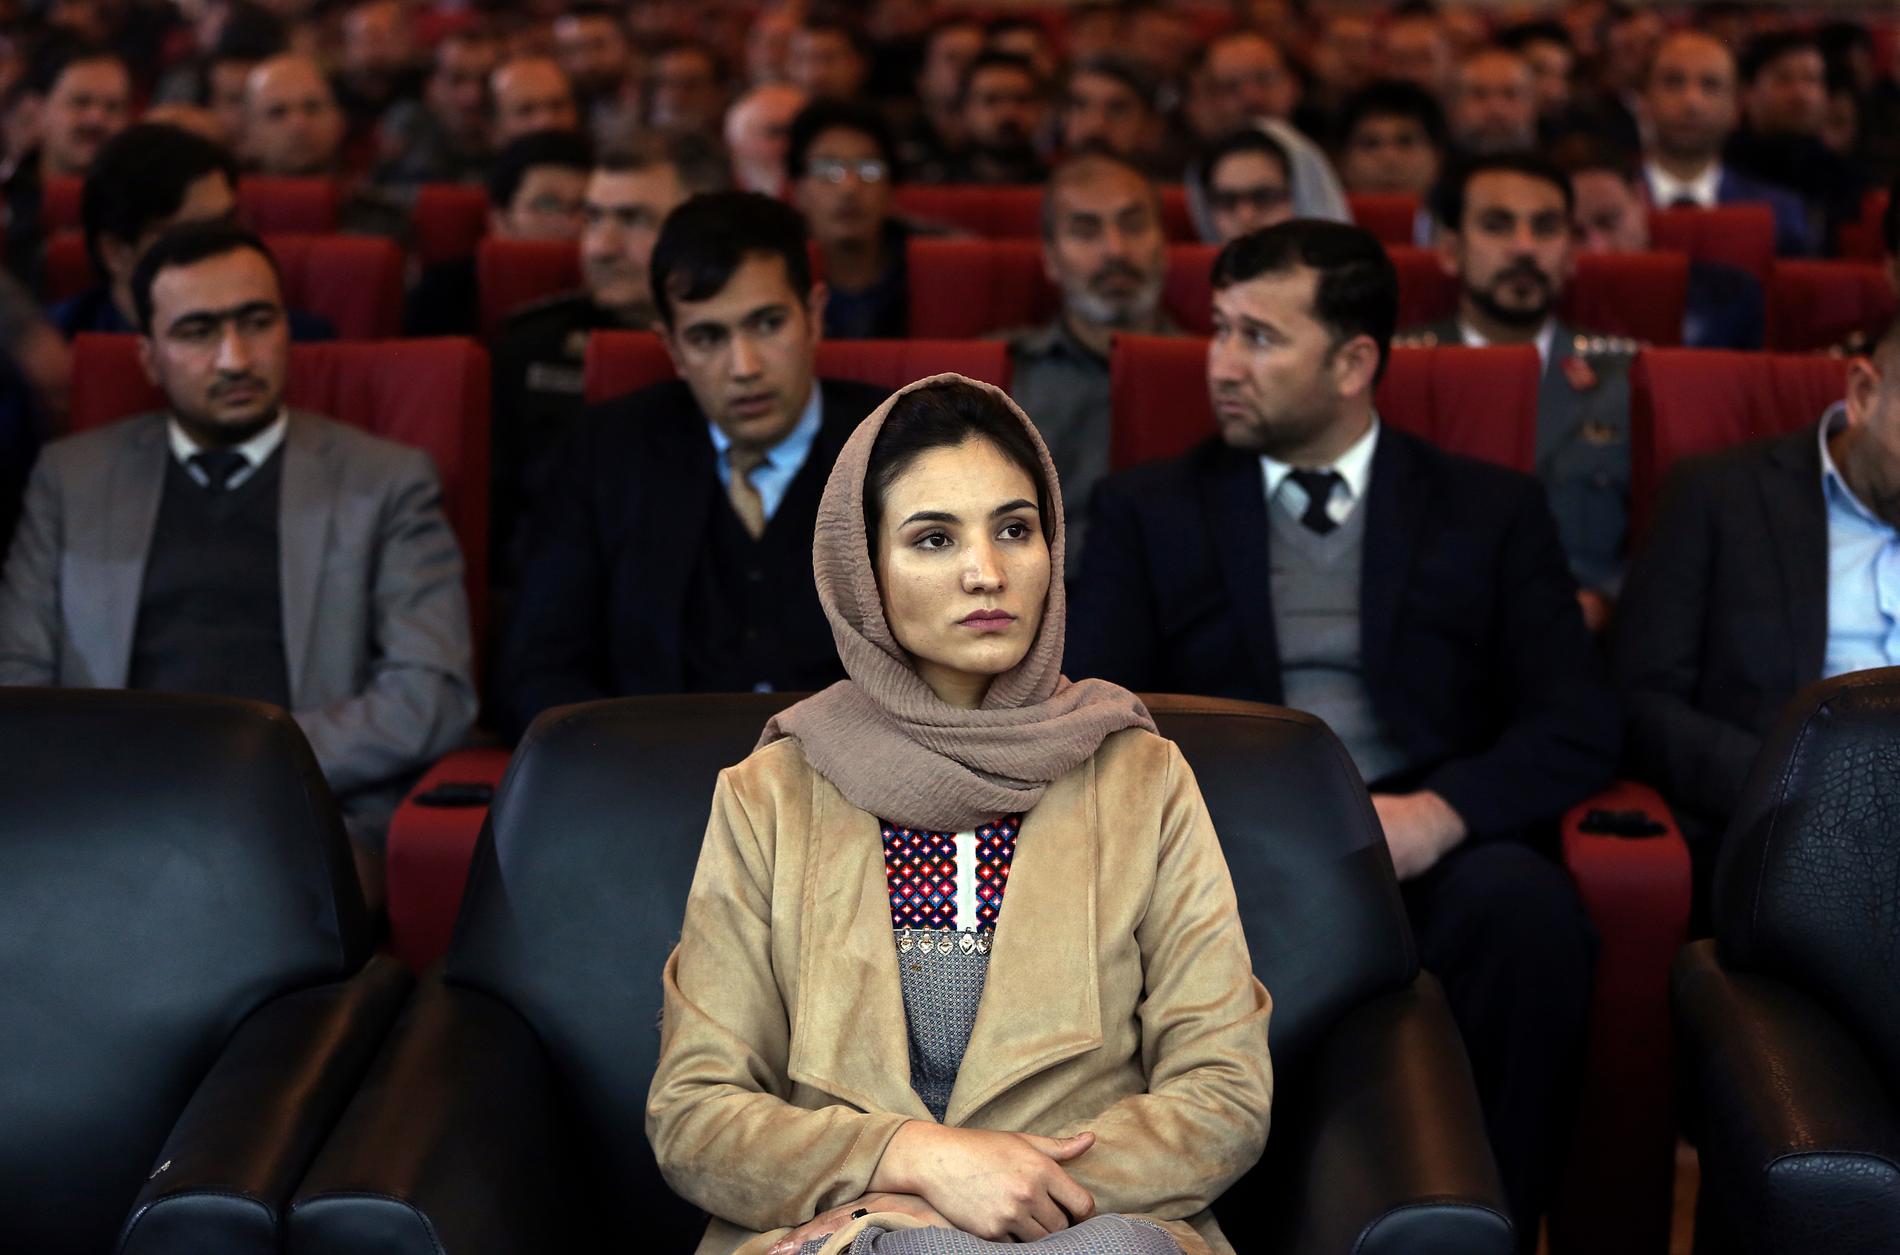 26-åriga Hosna Jalil blev nyligen den fösta kvinnan att utses till en högre post på Afghanistans inrikesdepartement. Motståndet mot ökad jämlikhet är dock fortfarande utbrett i landet, enligt en ny studie. Arkivbild.